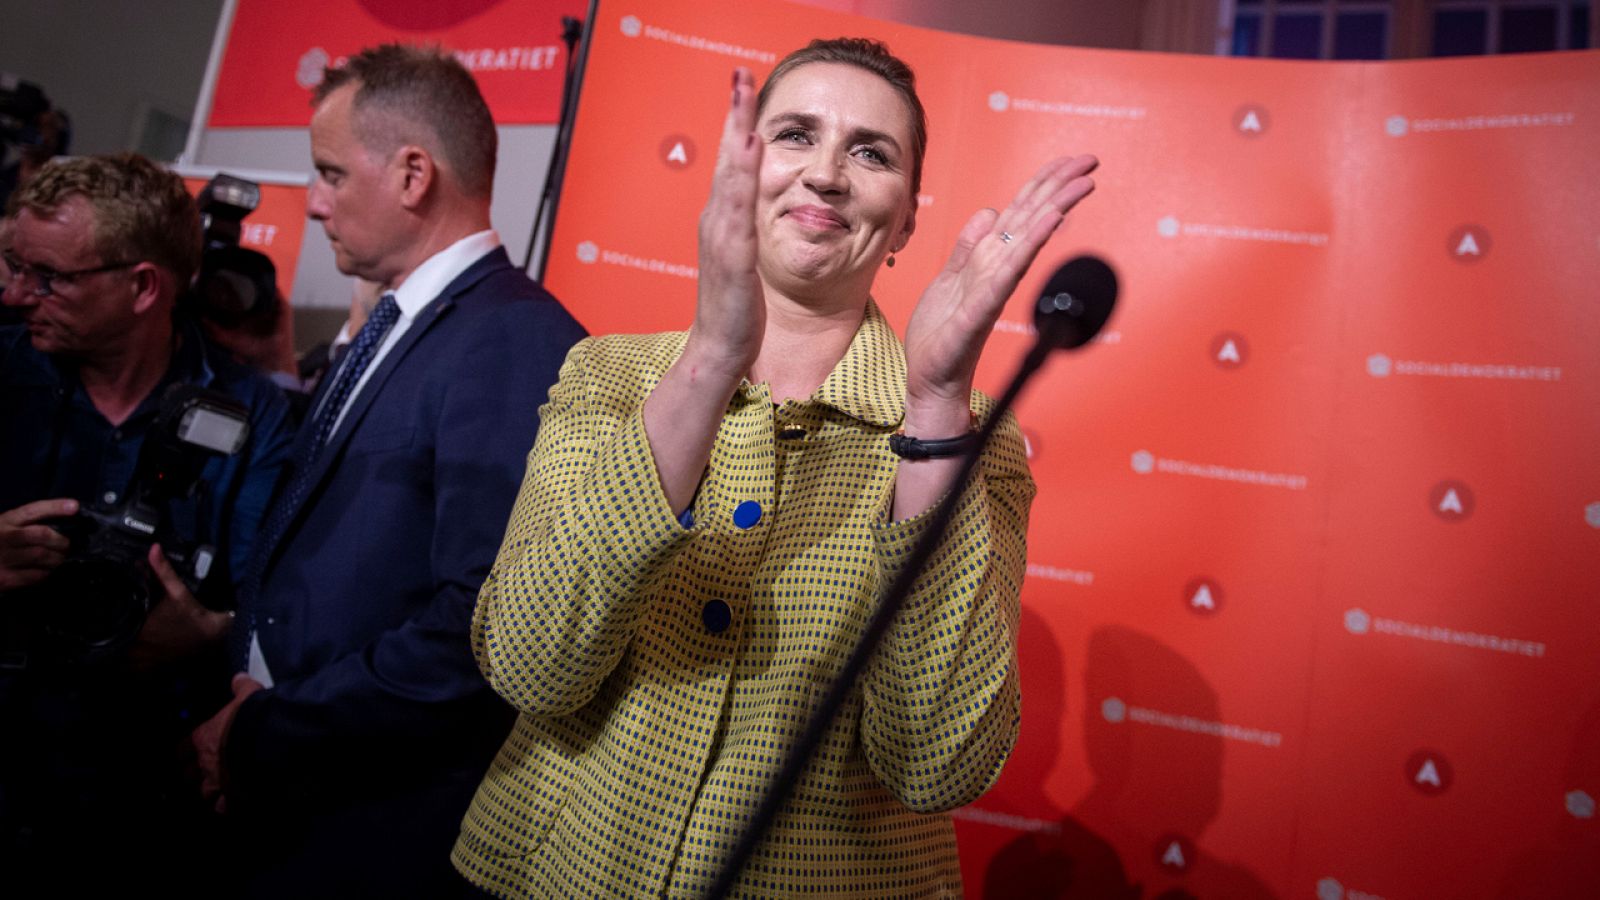 El Partido Socialdemócrata gana las elecciones legislativas en Dinamarca